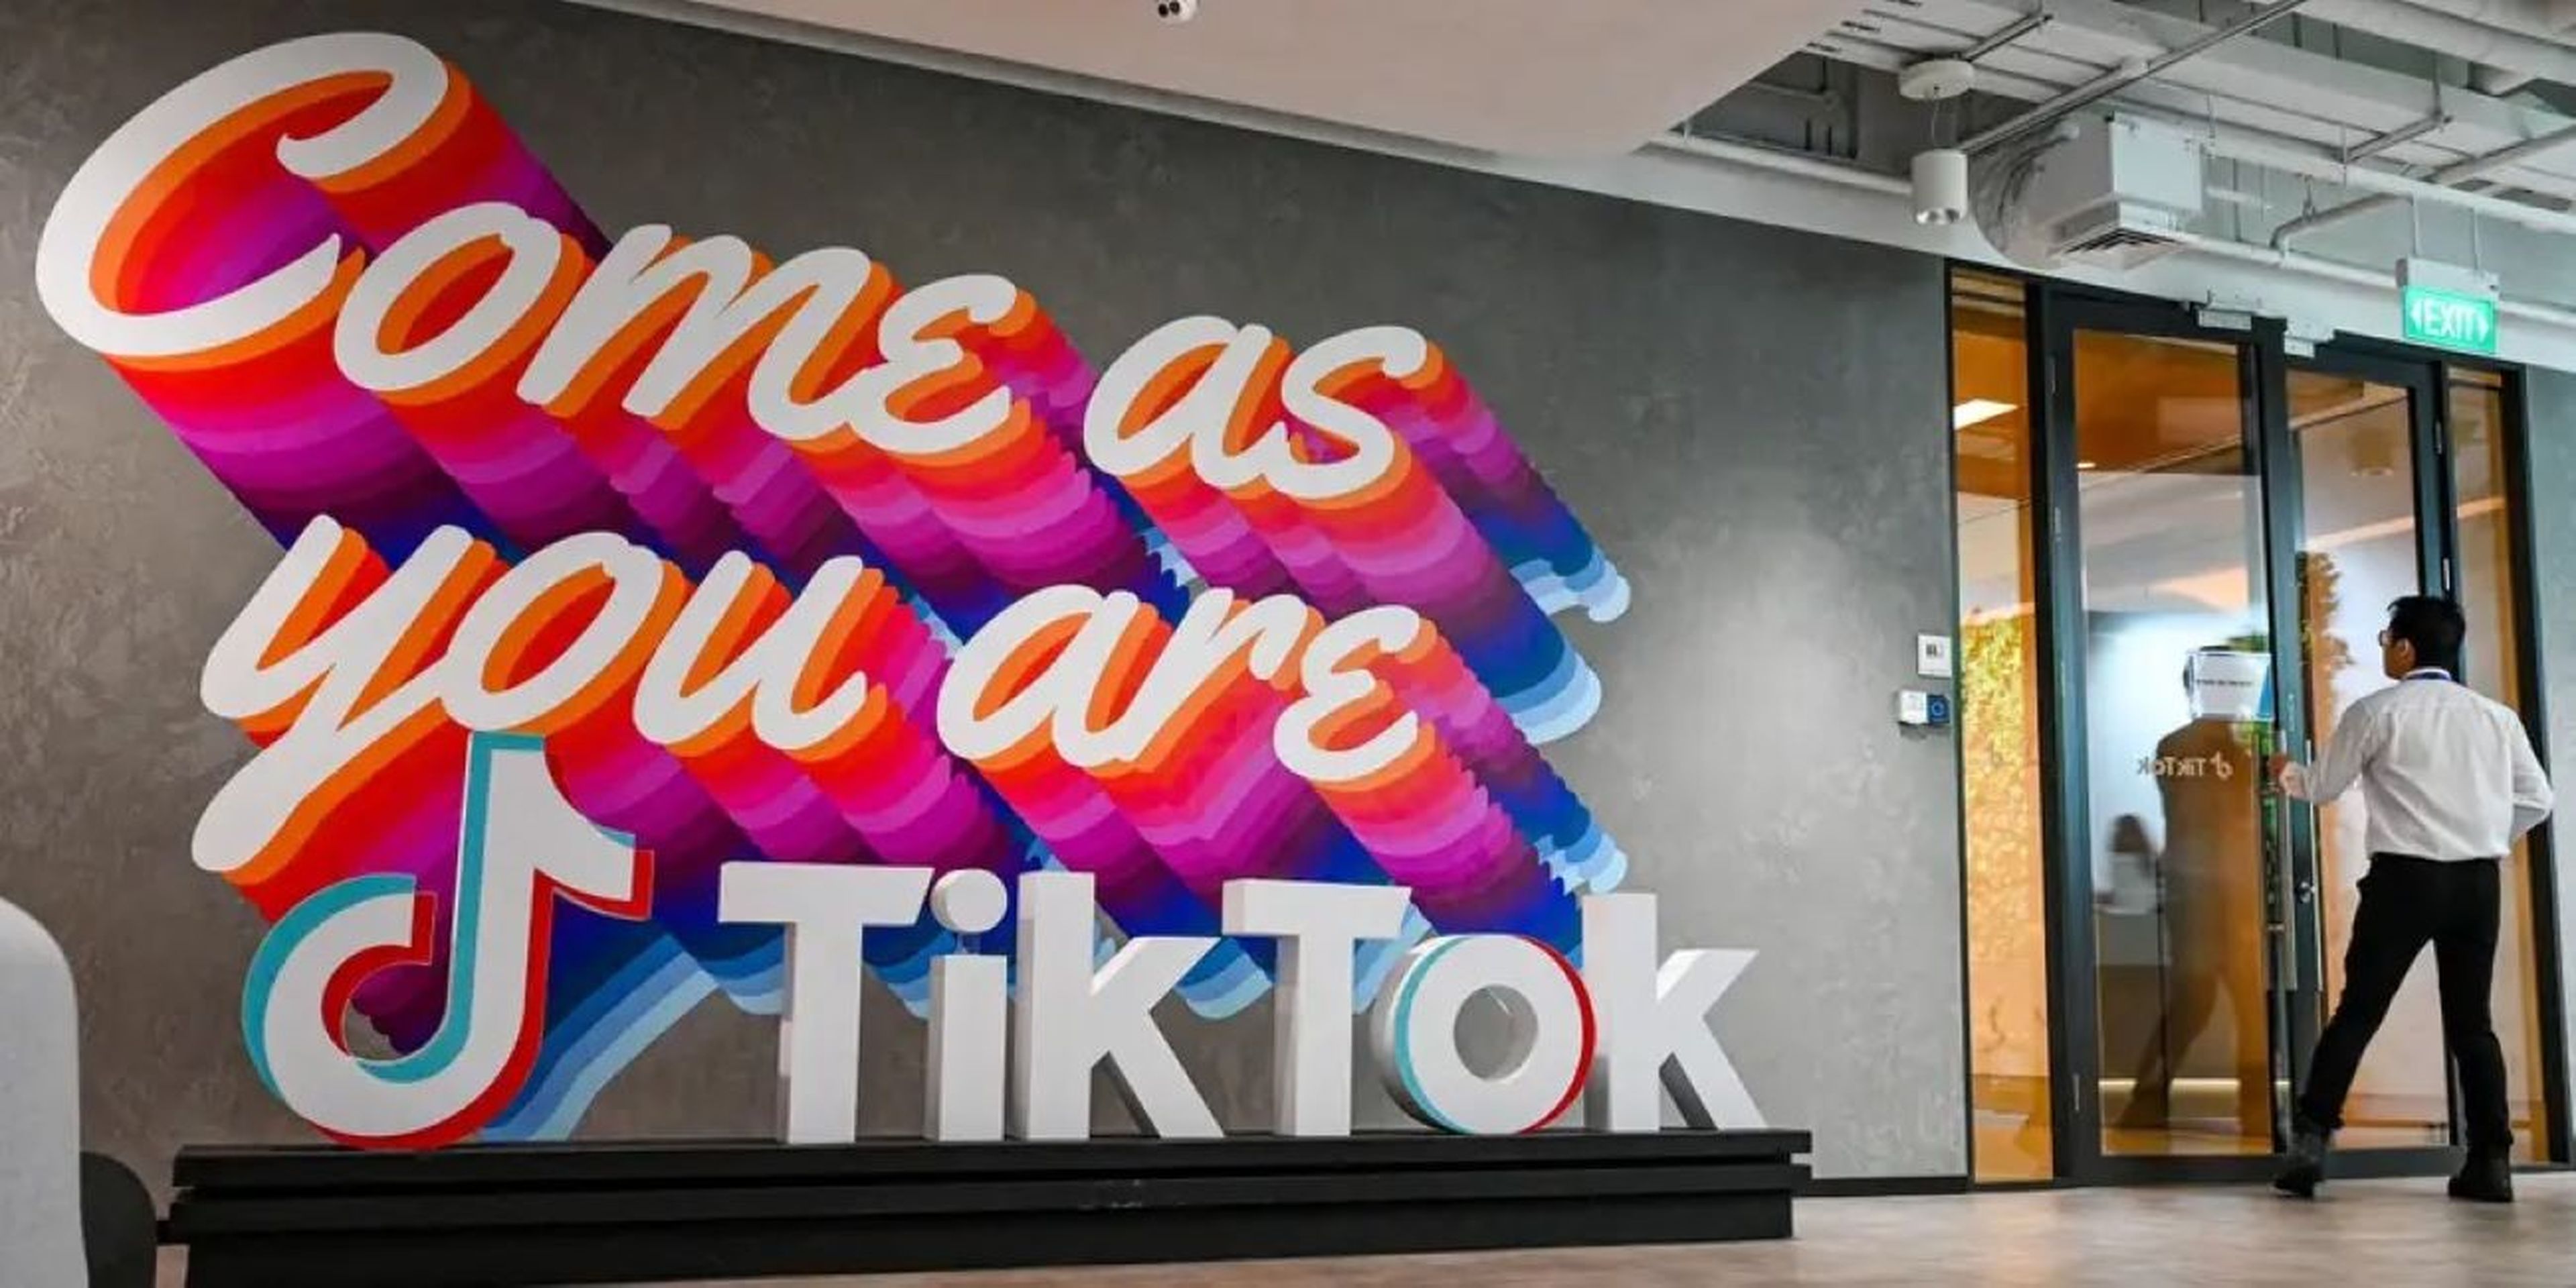 La entrada a la sede de la empresa TikTok en Singapur presenta un mural de vivos colores en la pared en el que se lee "ven como eres".